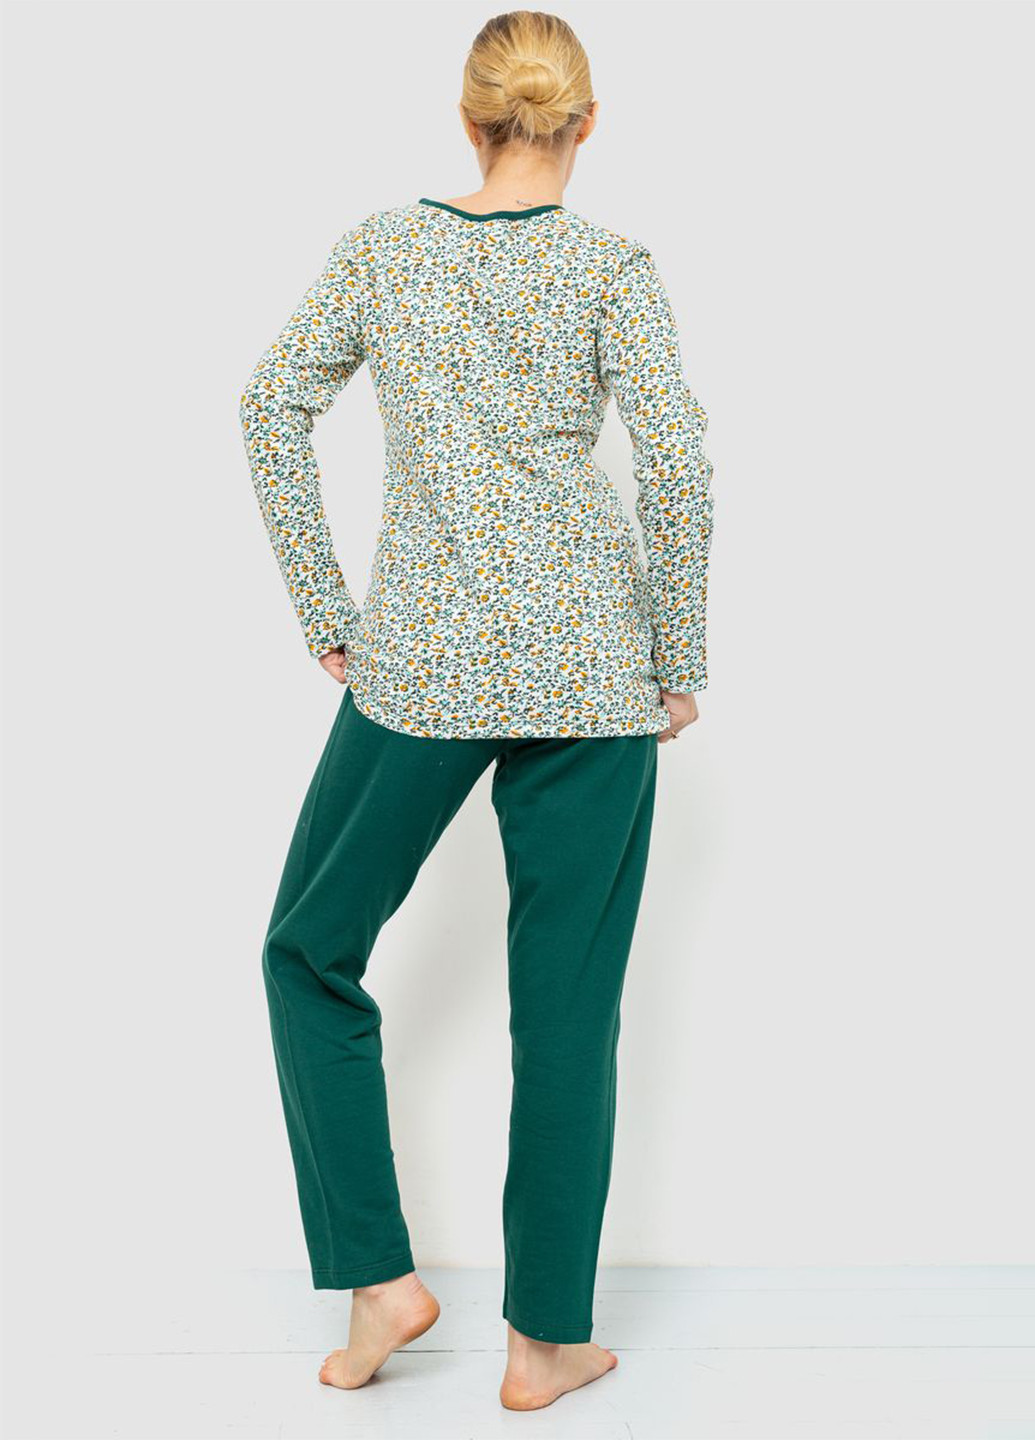 Изумрудная зимняя пижама (лонгслив, брюки) Ager